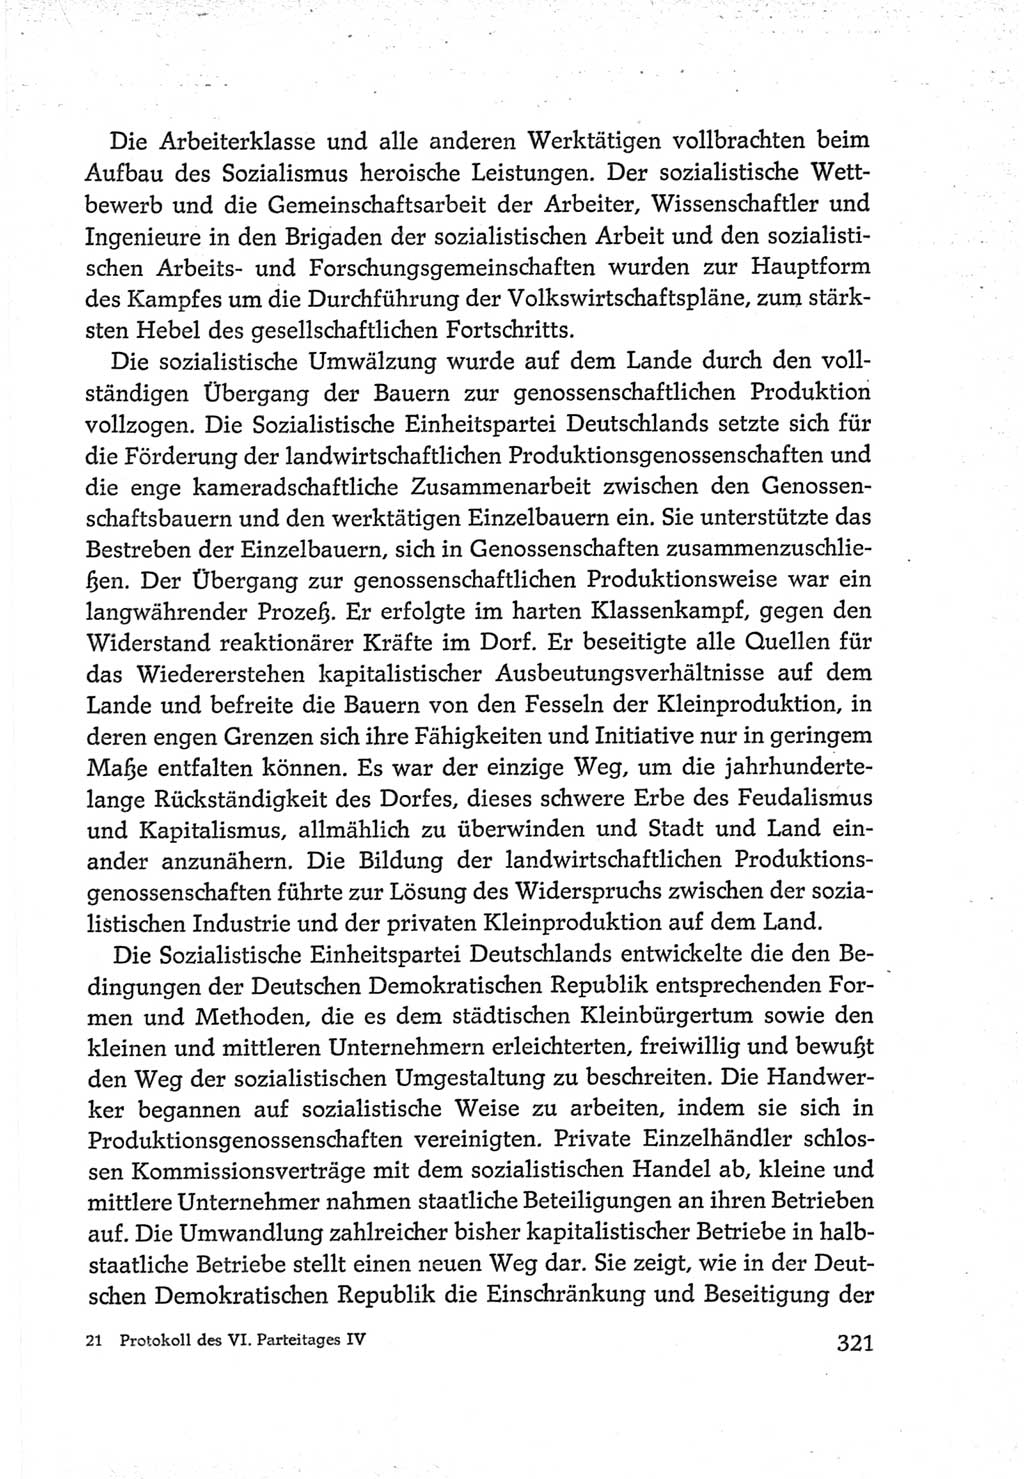 Protokoll der Verhandlungen des Ⅵ. Parteitages der Sozialistischen Einheitspartei Deutschlands (SED) [Deutsche Demokratische Republik (DDR)] 1963, Band Ⅳ, Seite 321 (Prot. Verh. Ⅵ. PT SED DDR 1963, Bd. Ⅳ, S. 321)